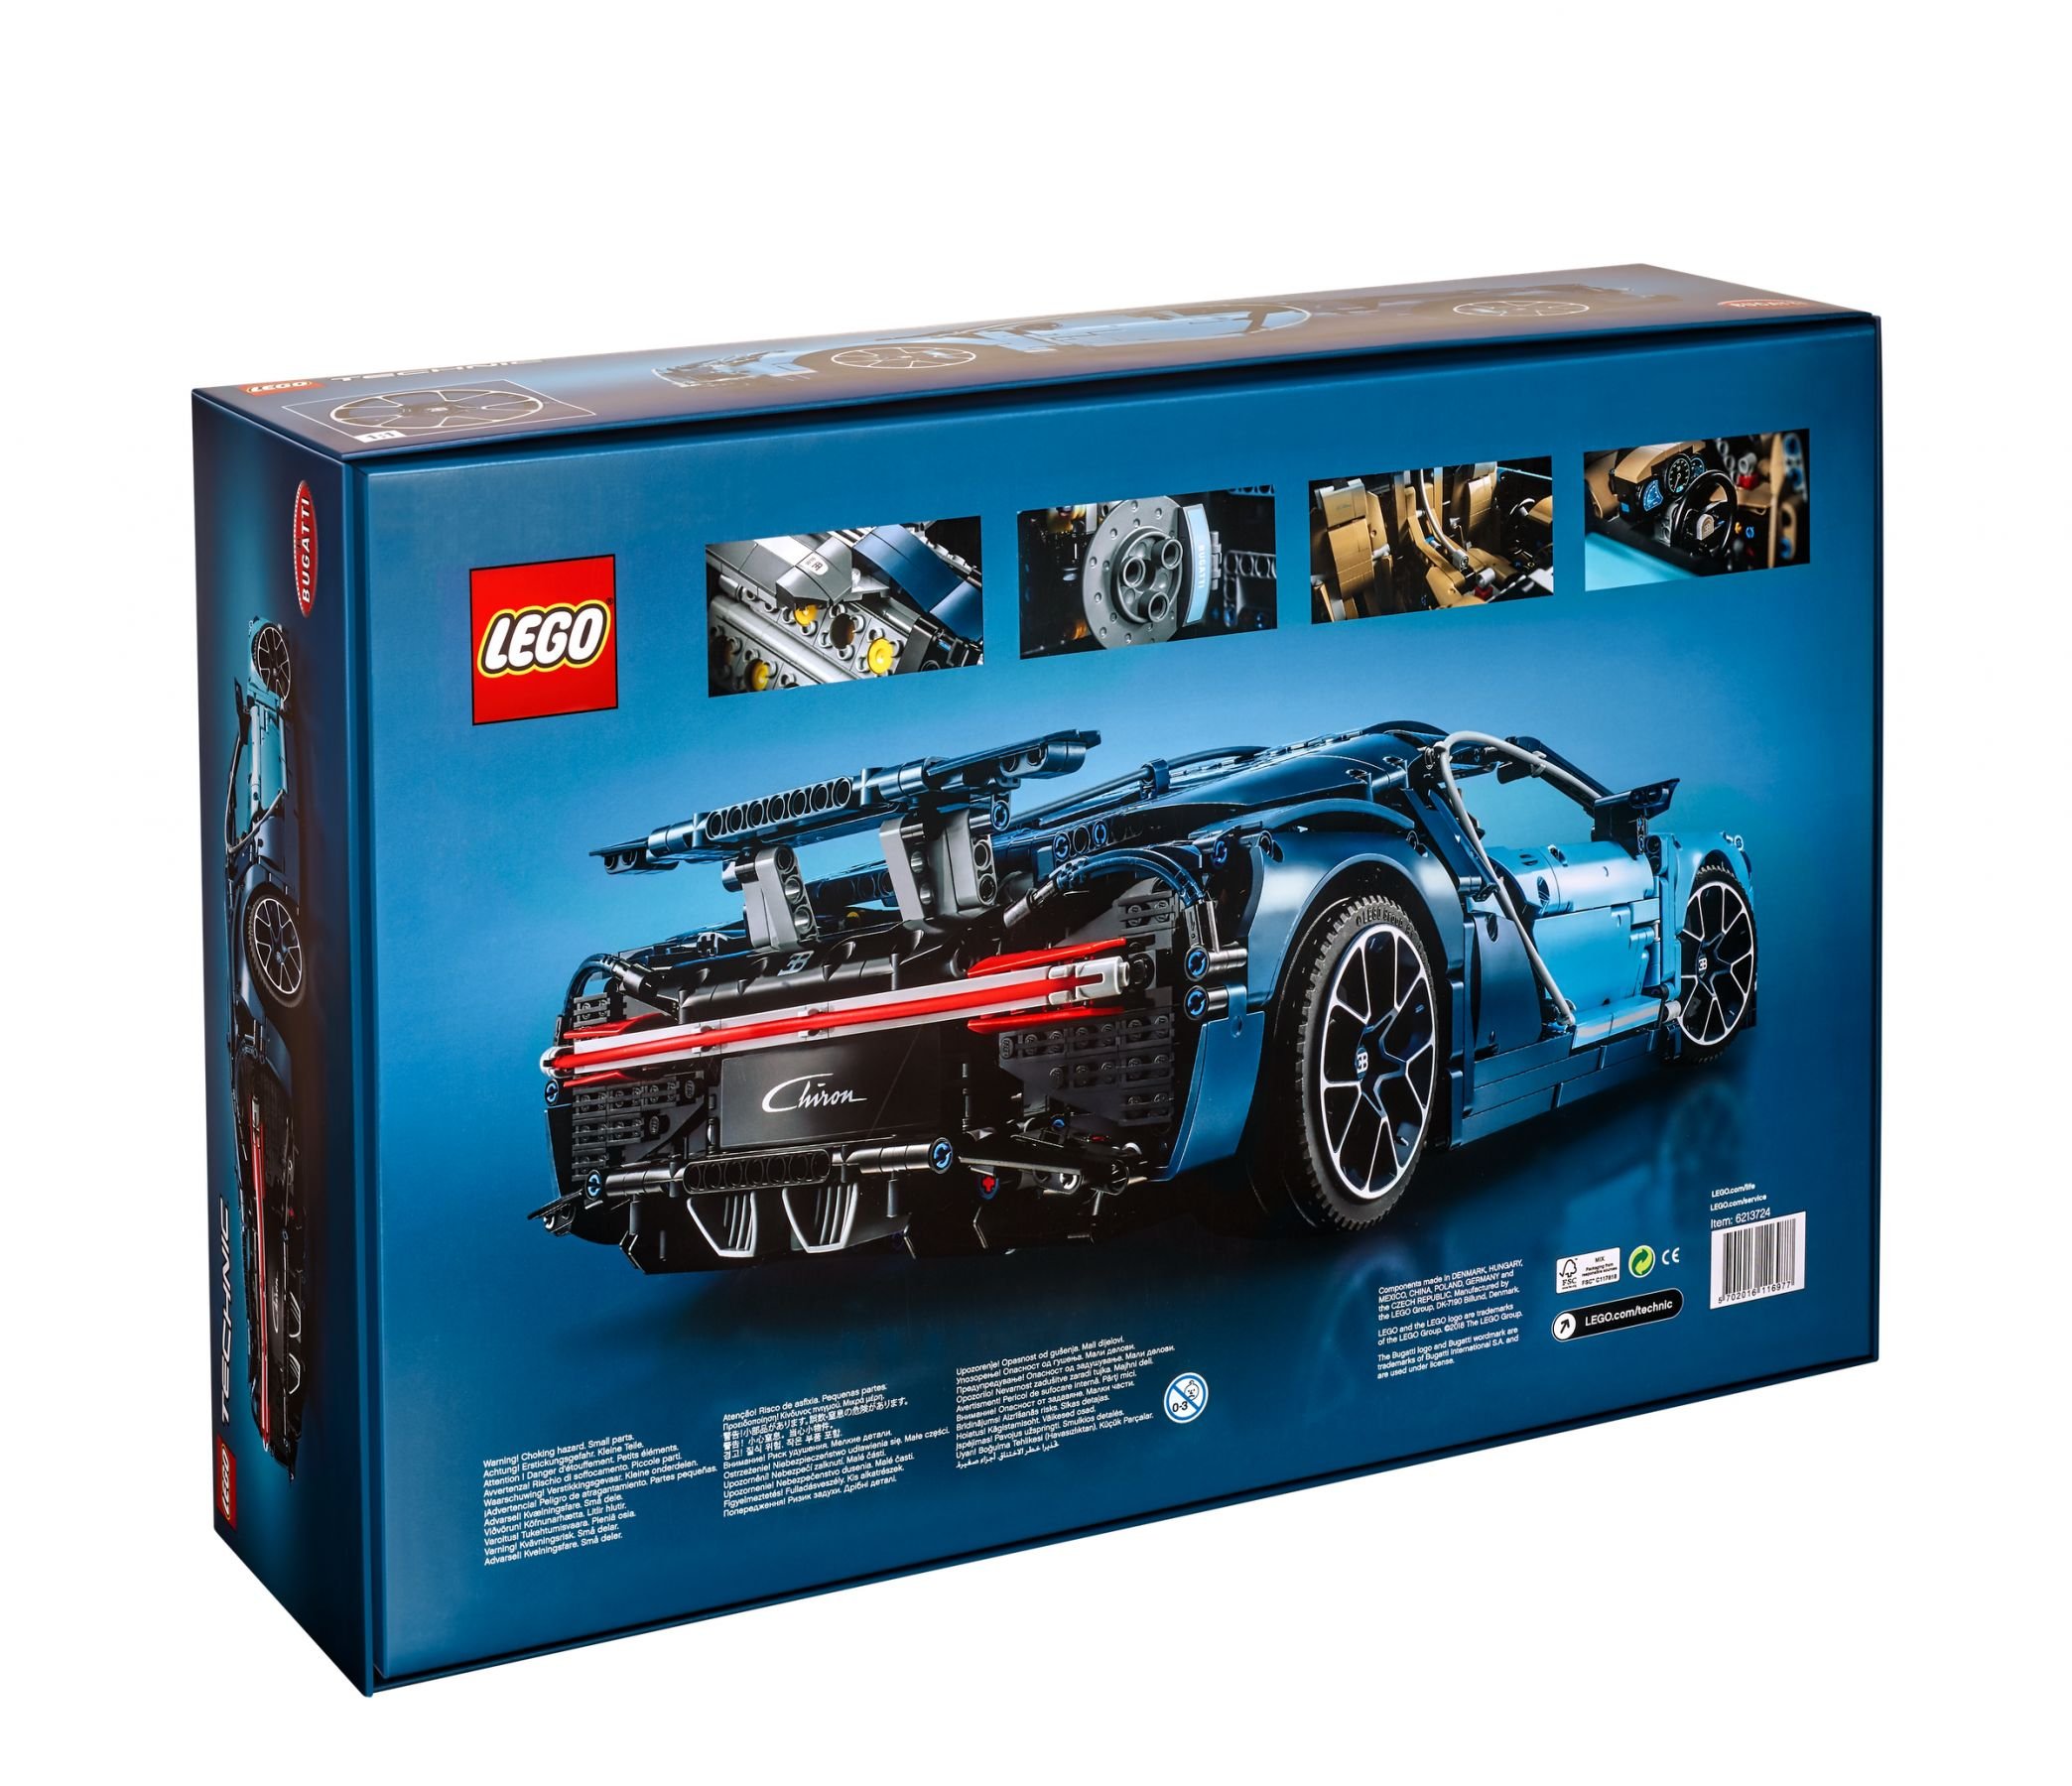 LEGO Technic 42083 Bugatti Chiron LEGO_42083_alt4.jpg